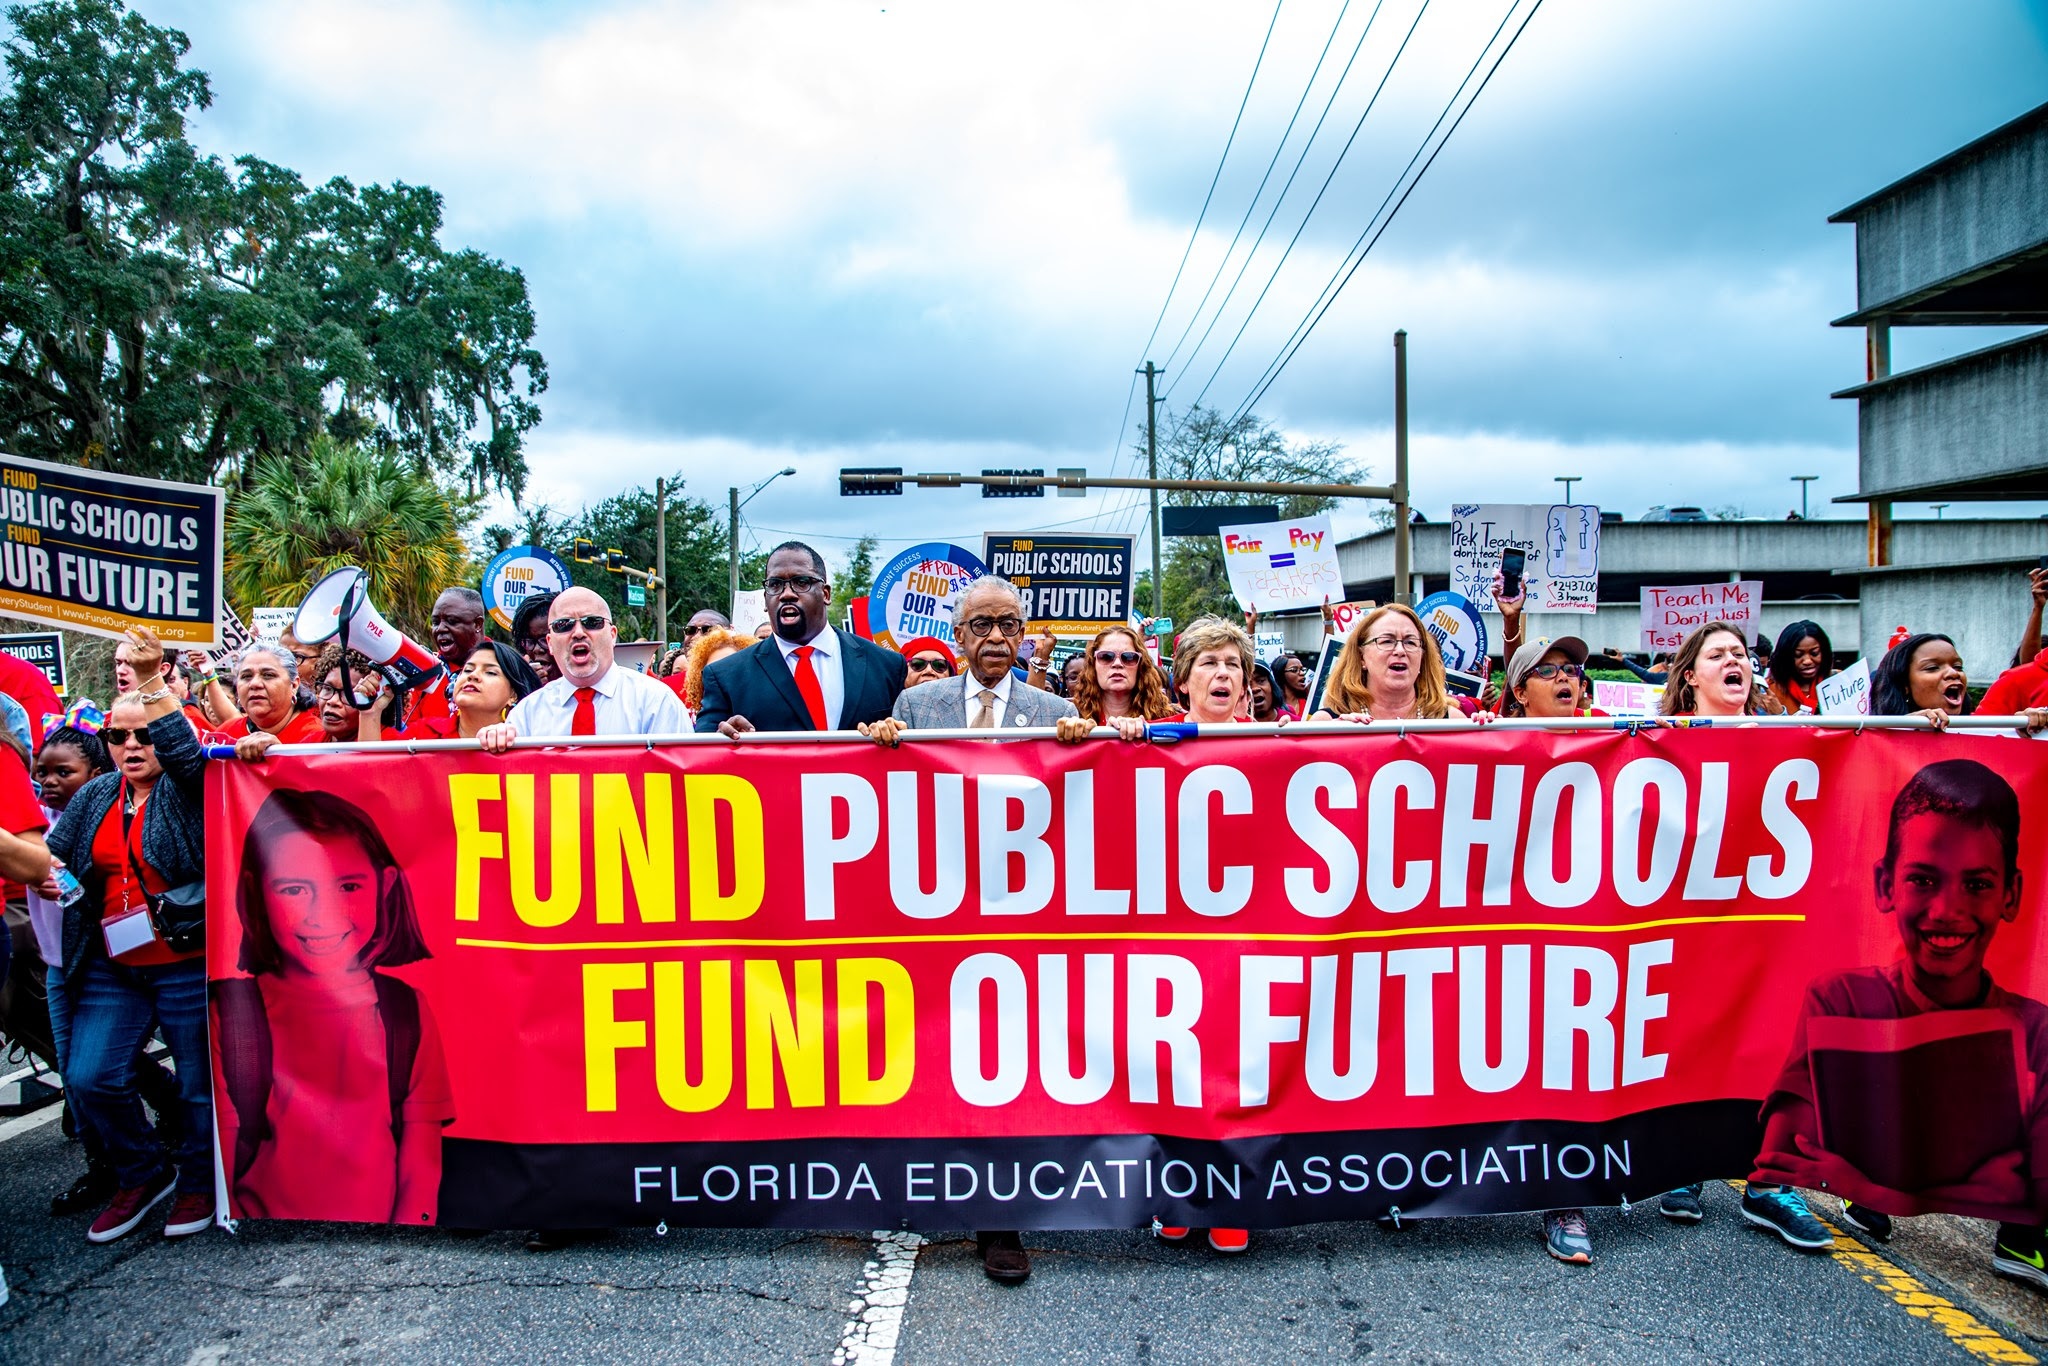 Asociación de Educación de la Florida: “DeSantis no proporciona soluciones reales para escuelas públicas”